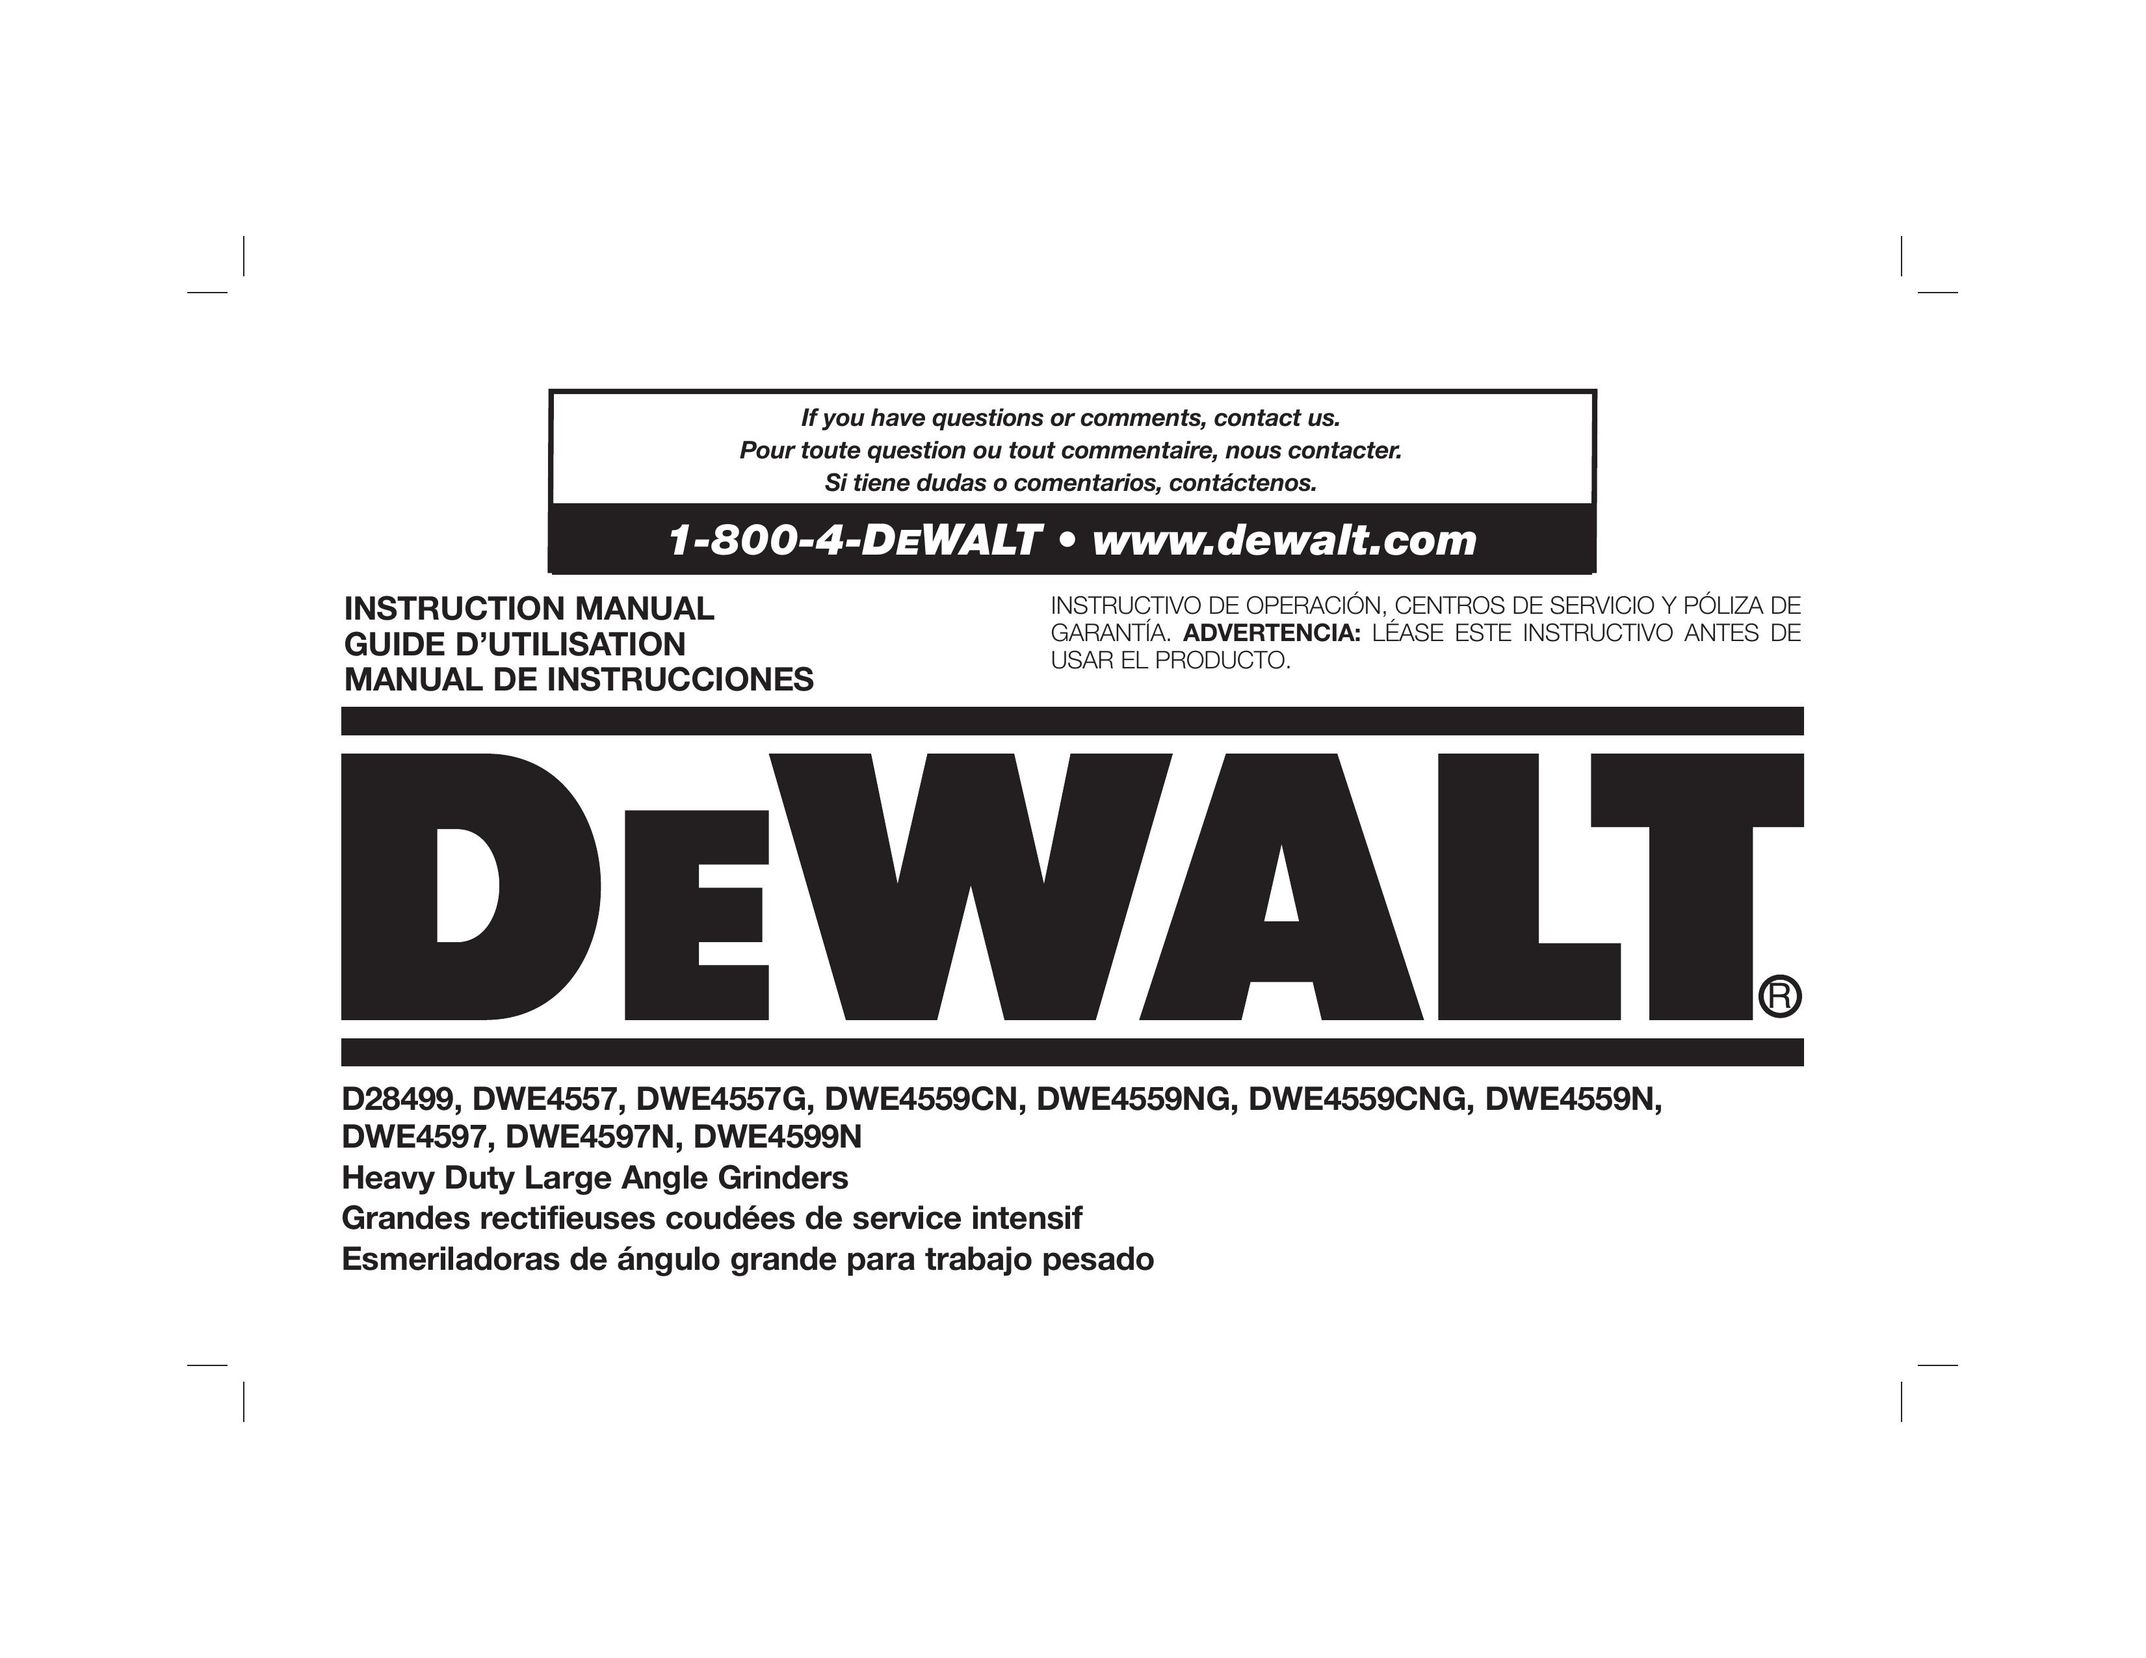 DeWalt DWE4597 Grinder User Manual